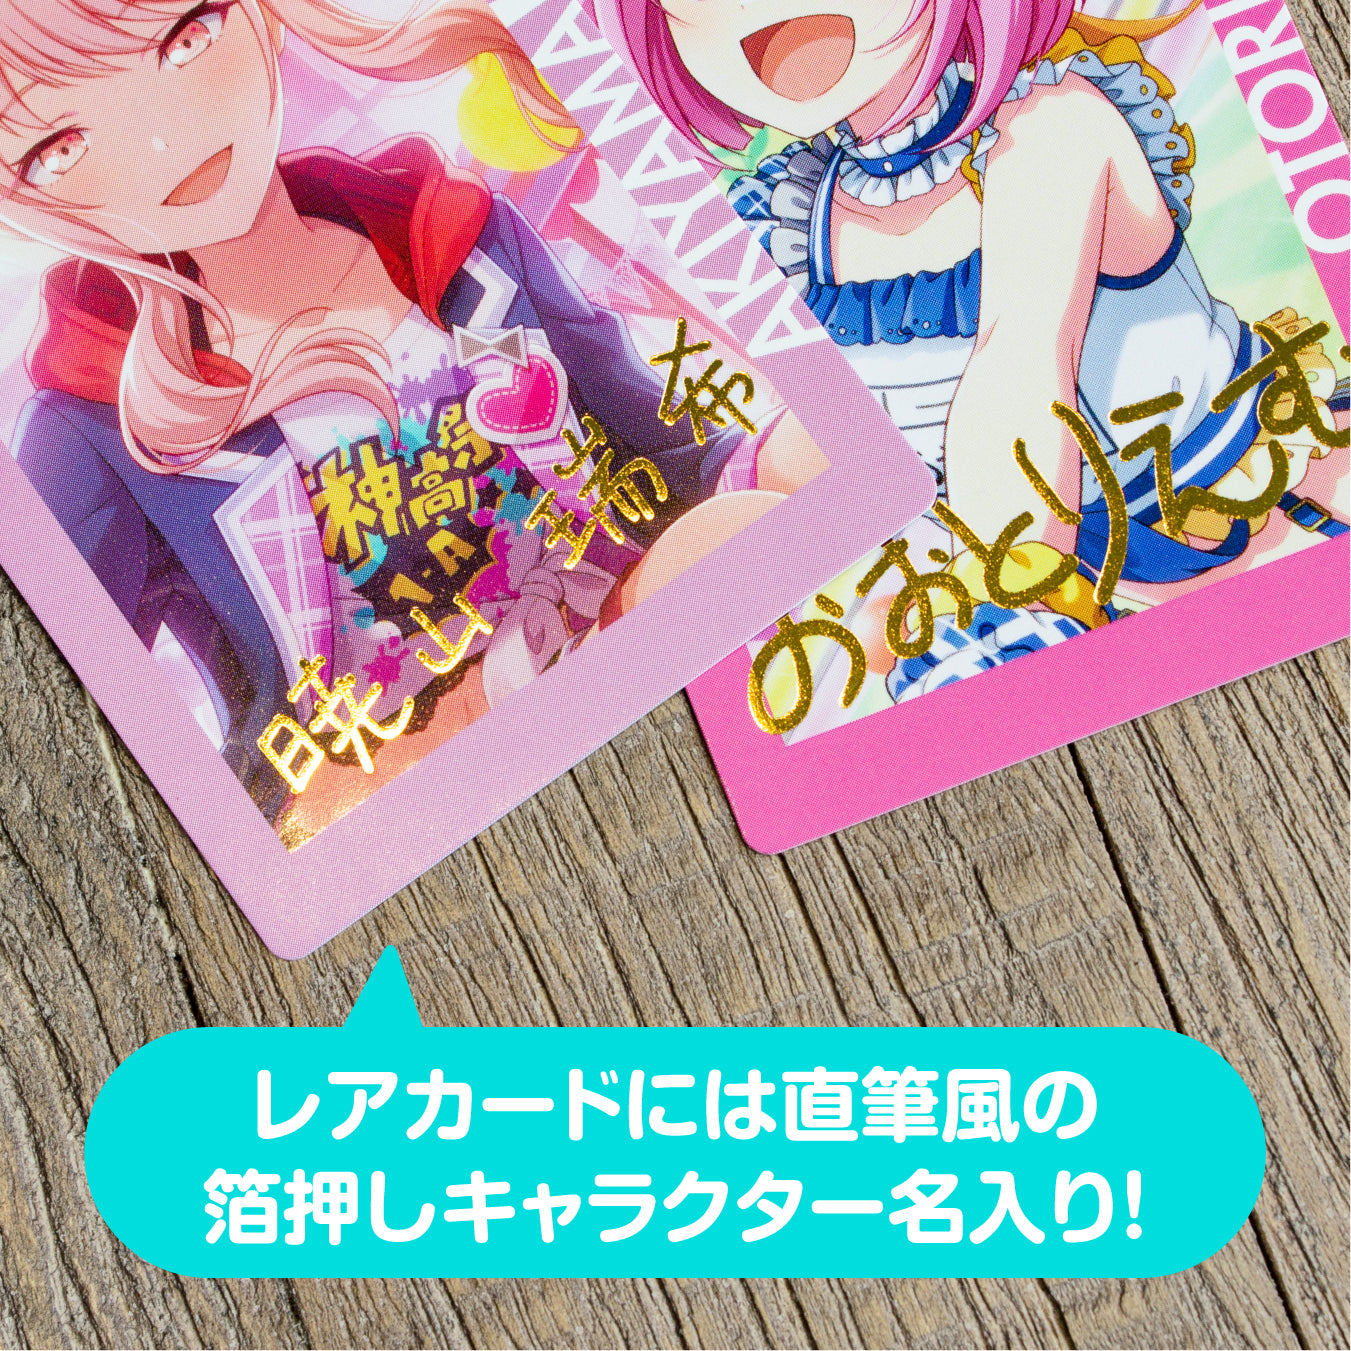 【予約商品】ePick card series vol.2 A